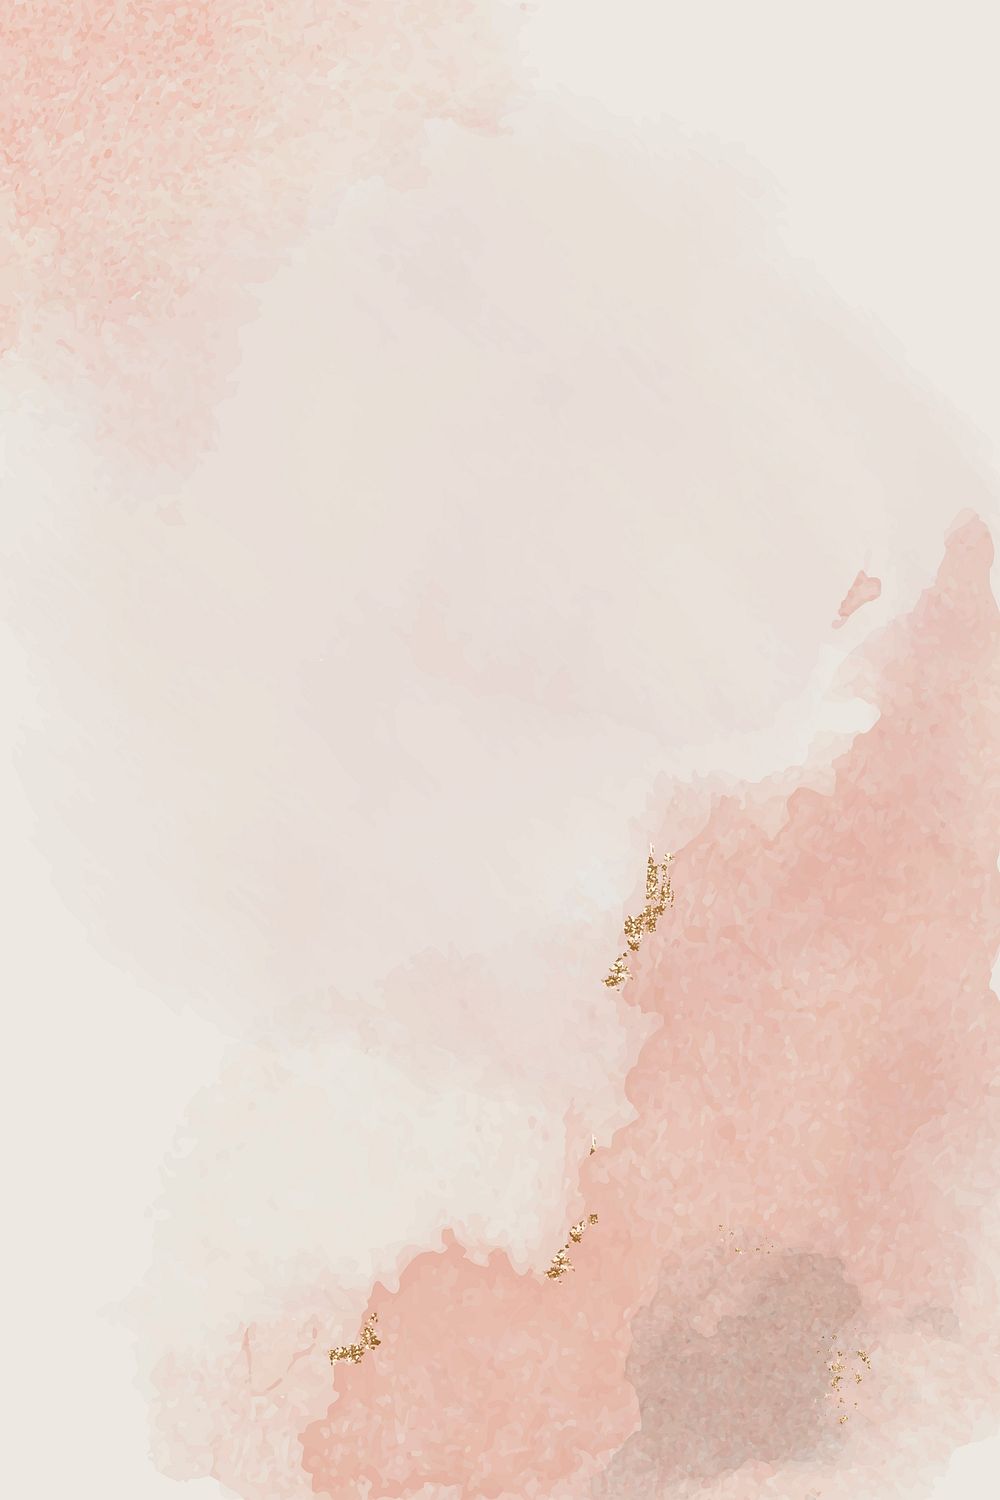 Pink smudge background design vector | Premium Vector - rawpixel